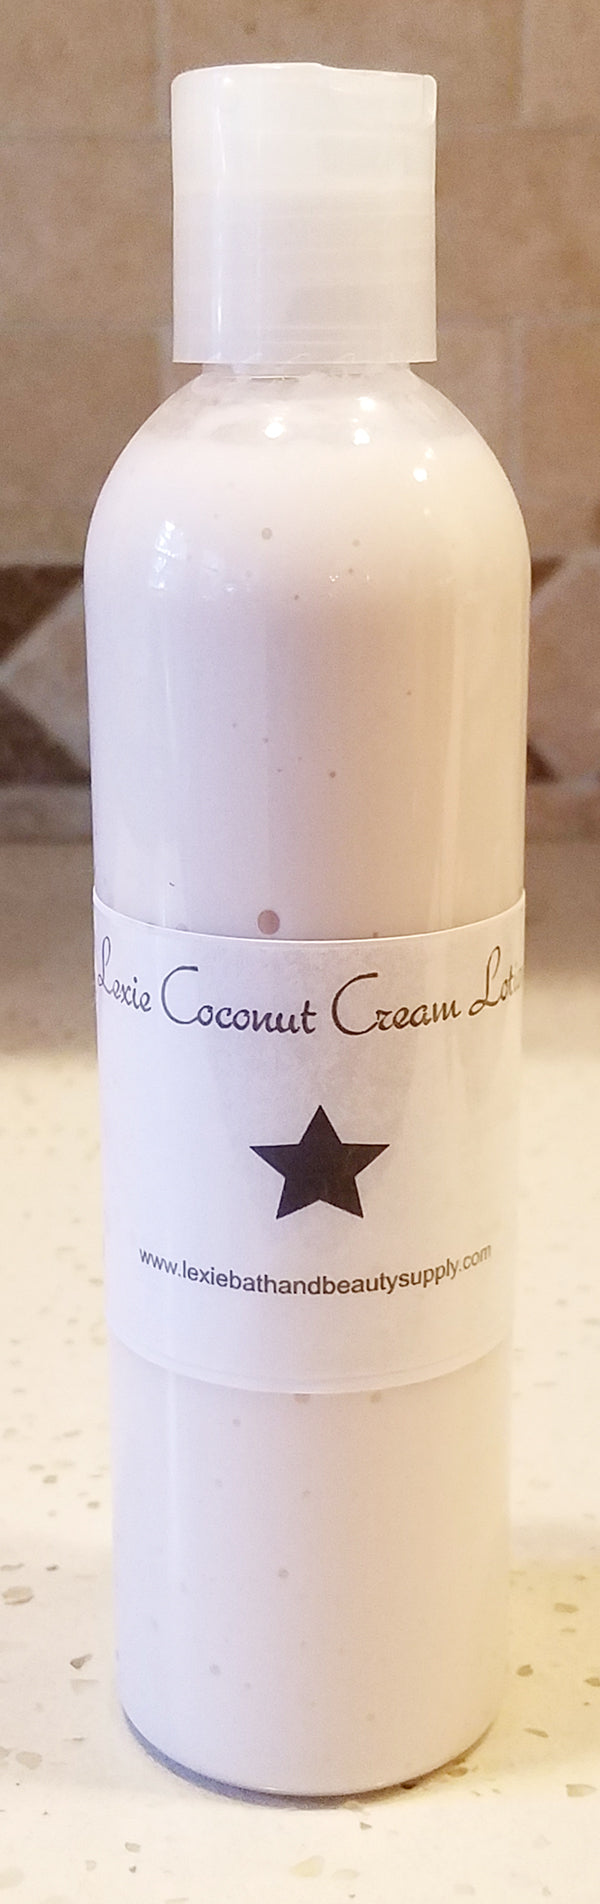 Lexie Coconut Cream Body Lotion - Lexie Bath and Beauty Supply